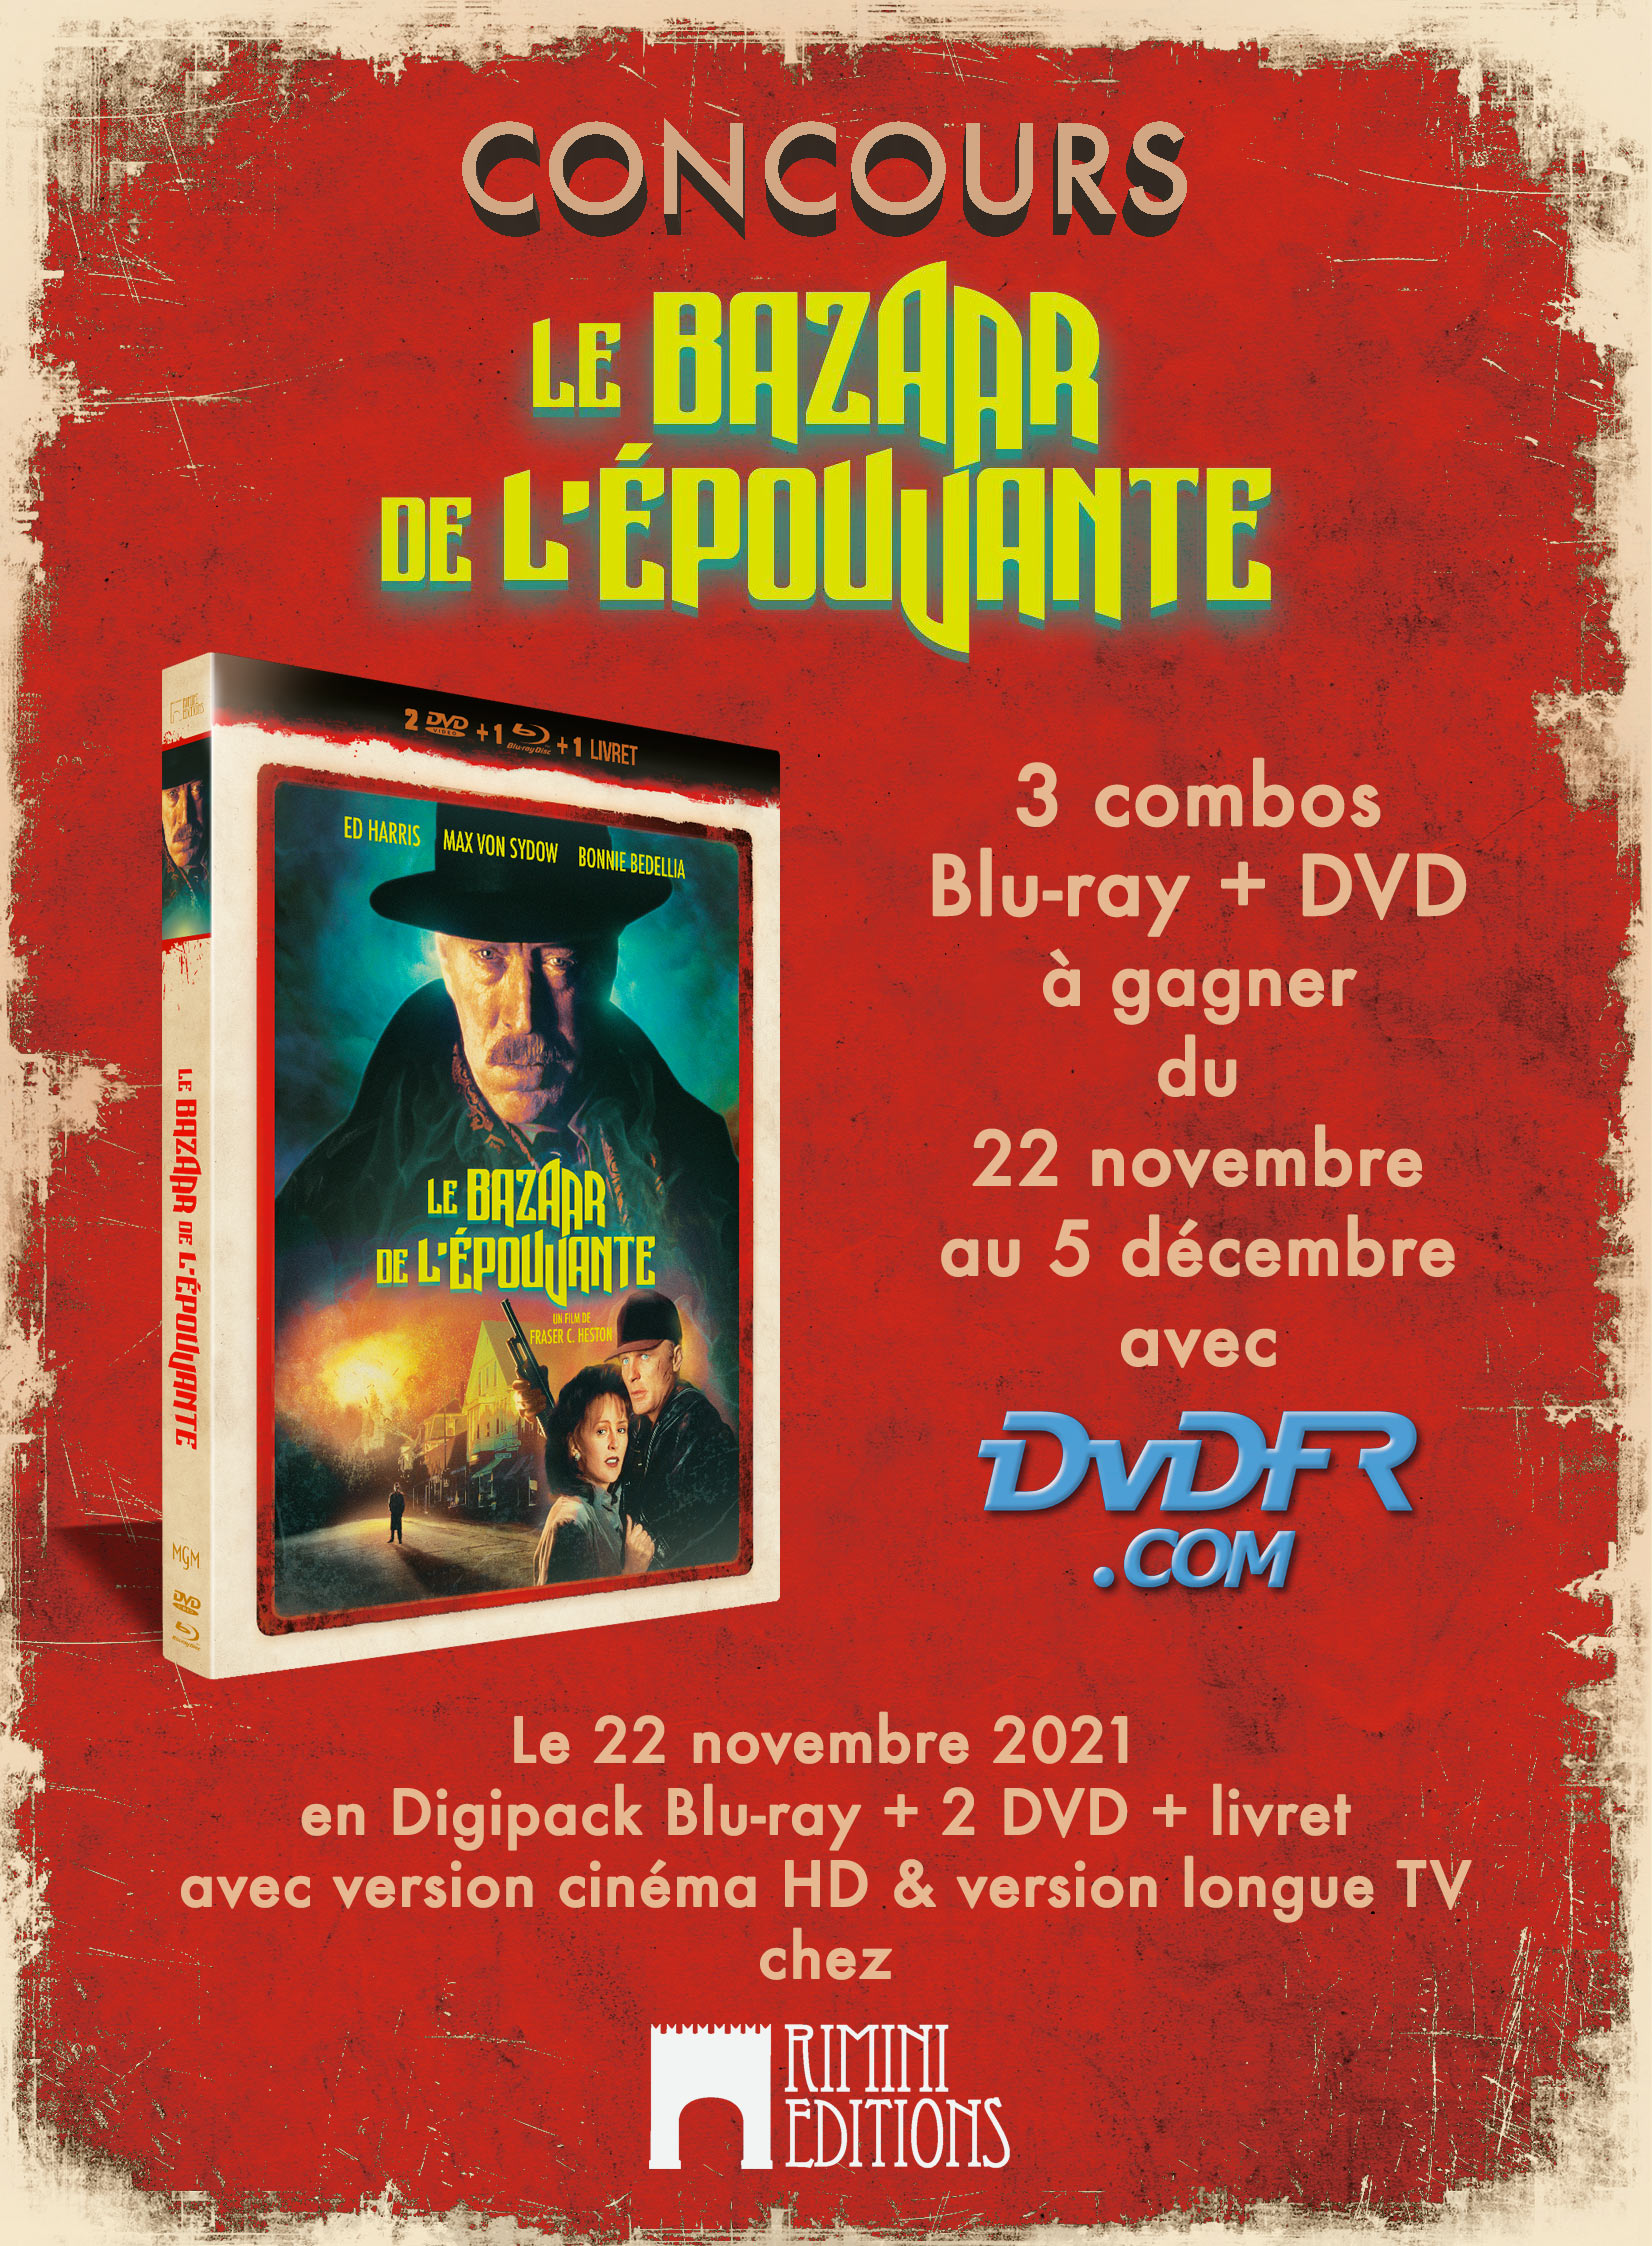 Concours - Le Bazaar de l'épouvante - Blu-ray + DVD + Livret - Rimini Editions